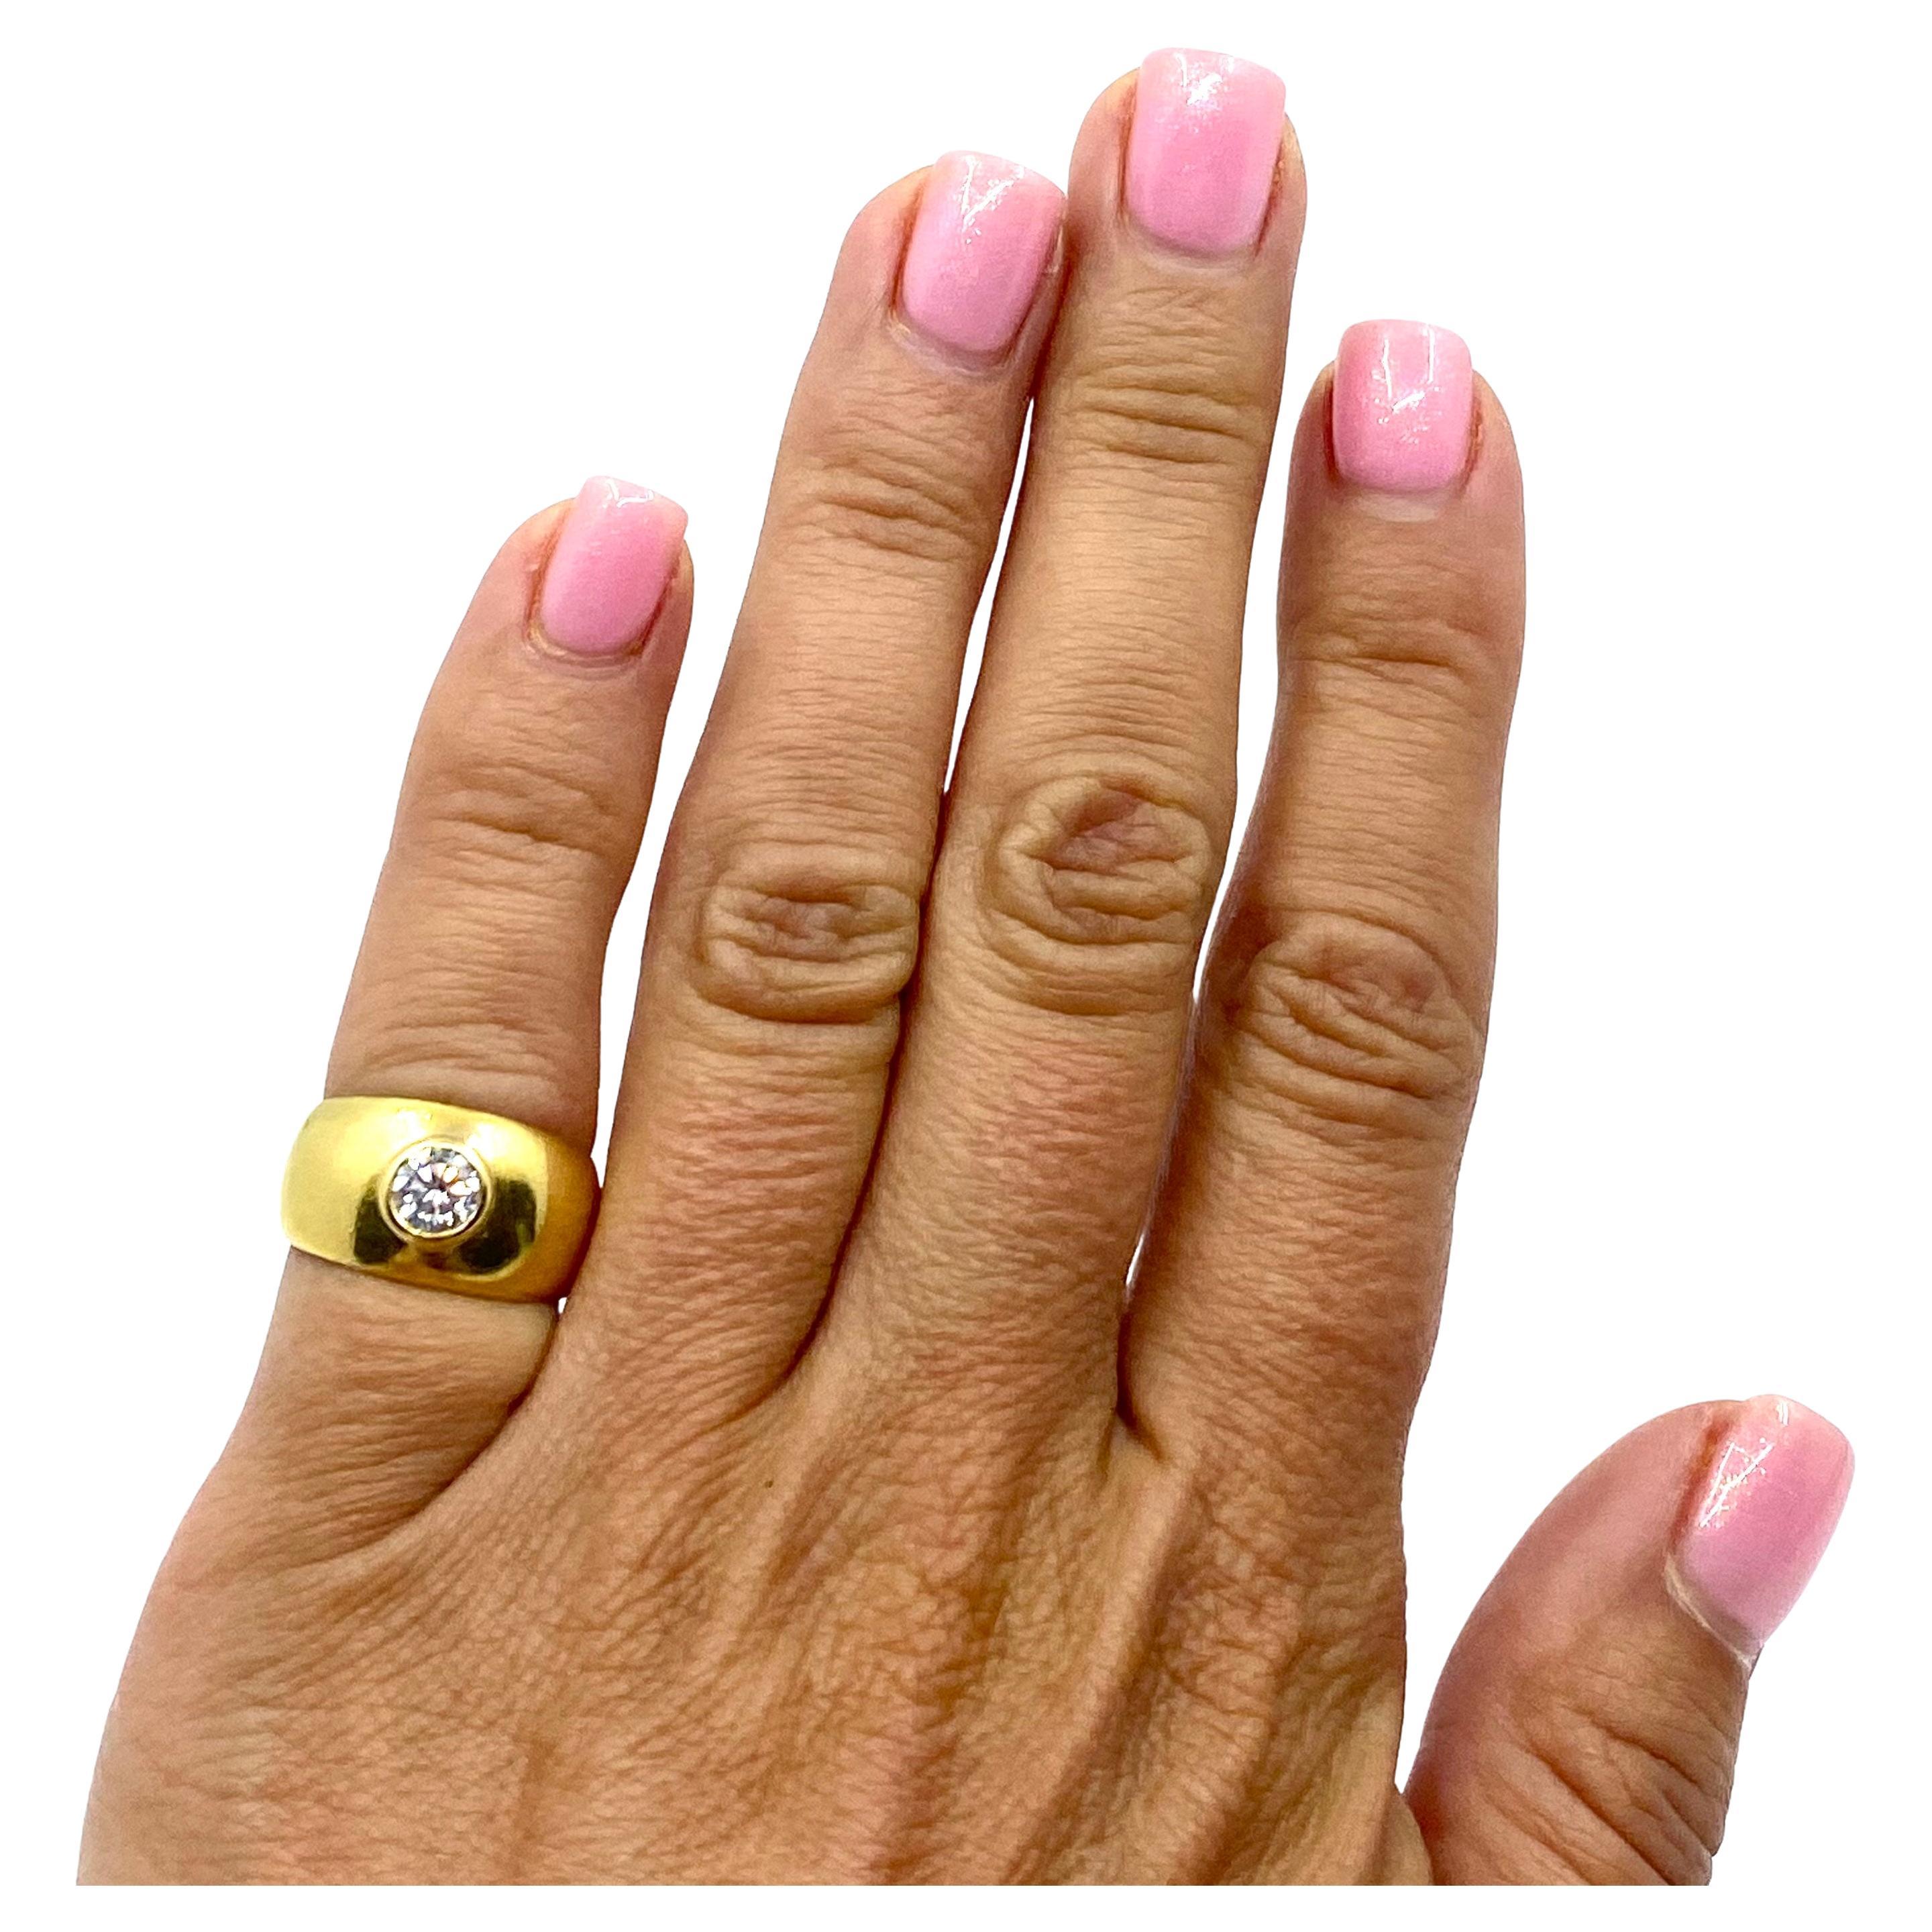 Bague solitaire vintage en or 18k, ornée d'un diamant.
Ce superbe anneau en or au design minimal peut être un parfait anneau pour le petit doigt.
Le diamant est serti sur une lunette et monté à fleur, ce qui le fait paraître plus gros. L'anneau a